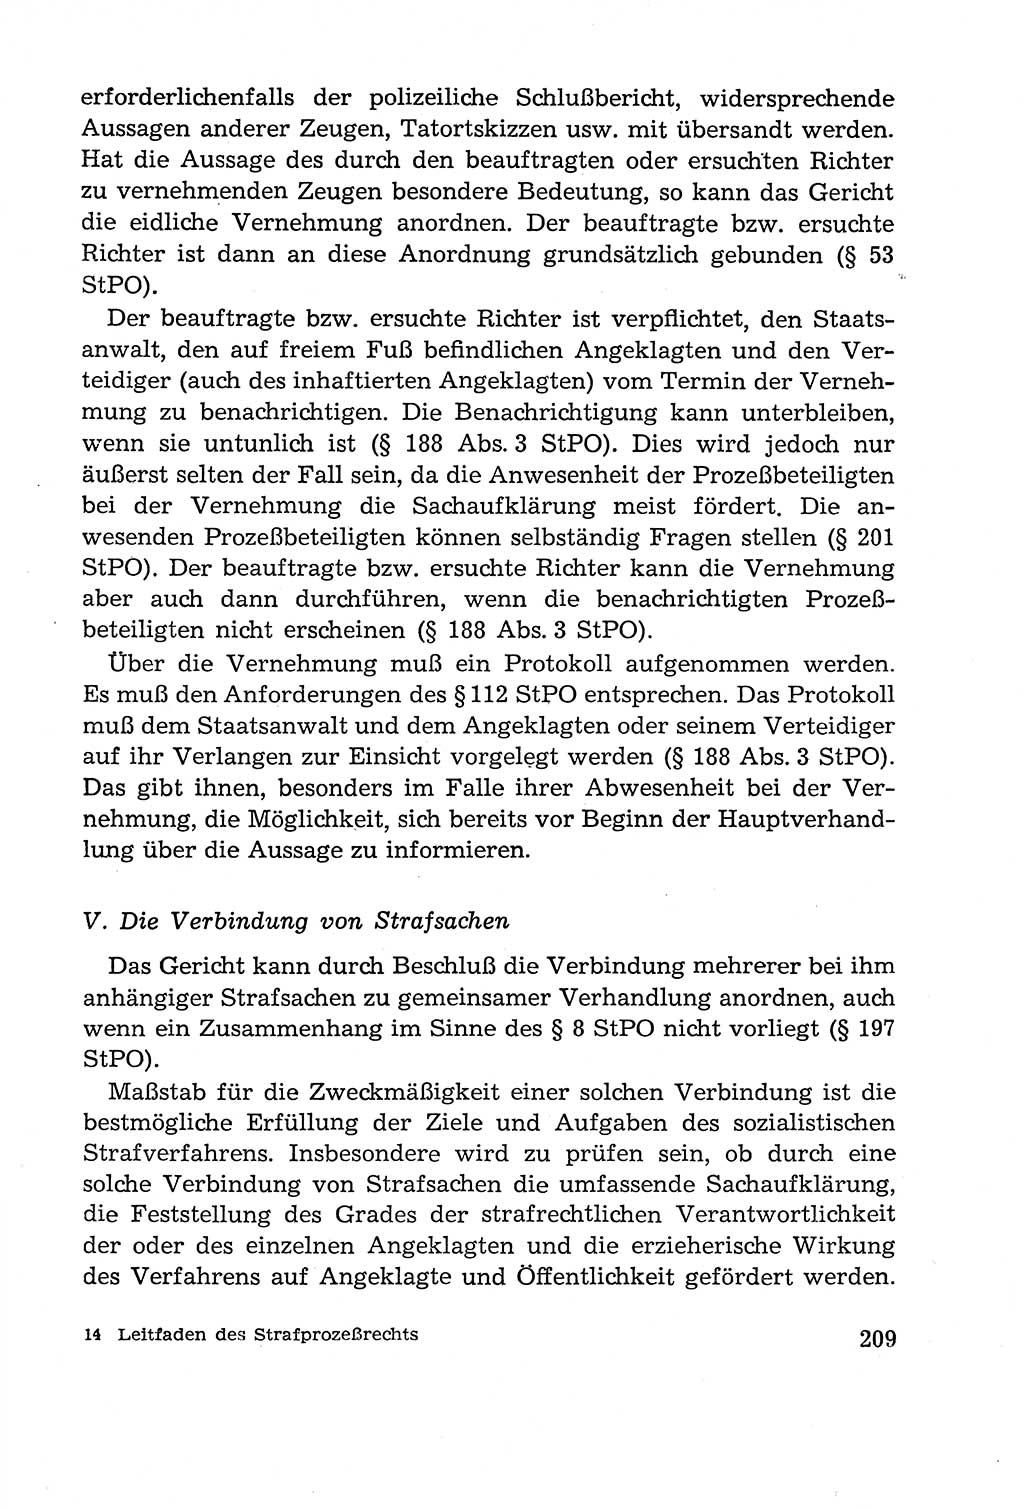 Leitfaden des Strafprozeßrechts der Deutschen Demokratischen Republik (DDR) 1959, Seite 209 (LF StPR DDR 1959, S. 209)